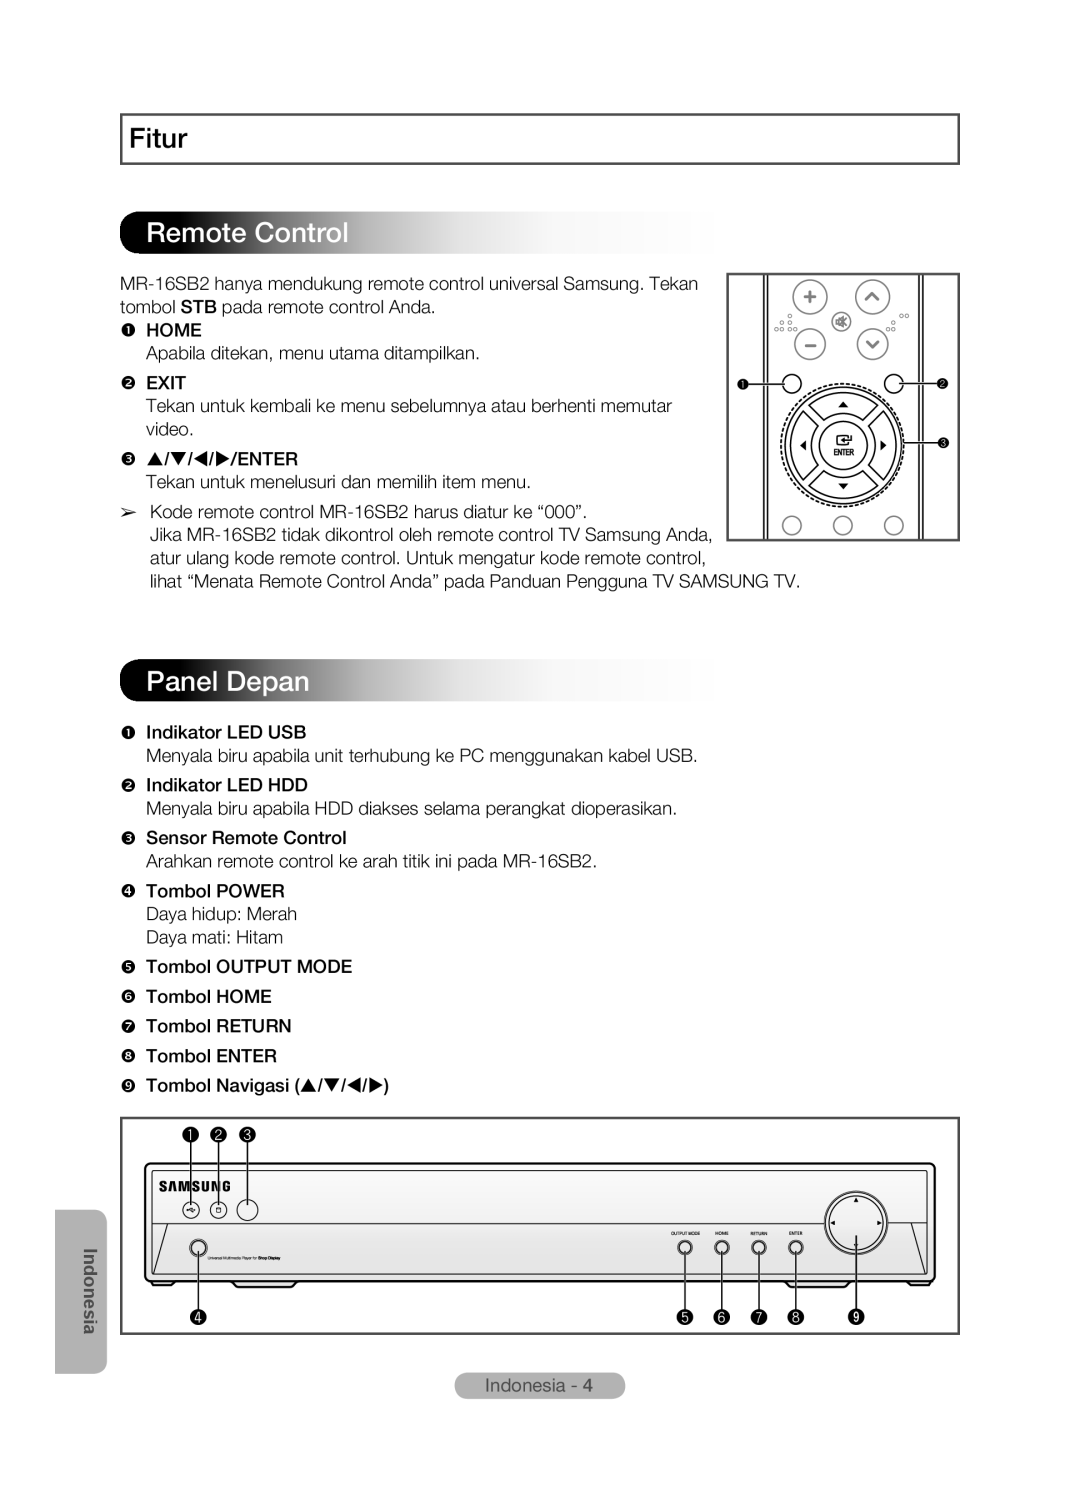 Samsung MR-16SB2 manual Panel Depan, Fitur, Remote Control,  HOME Apabila ditekan, menu utama ditampilkan  EXIT 